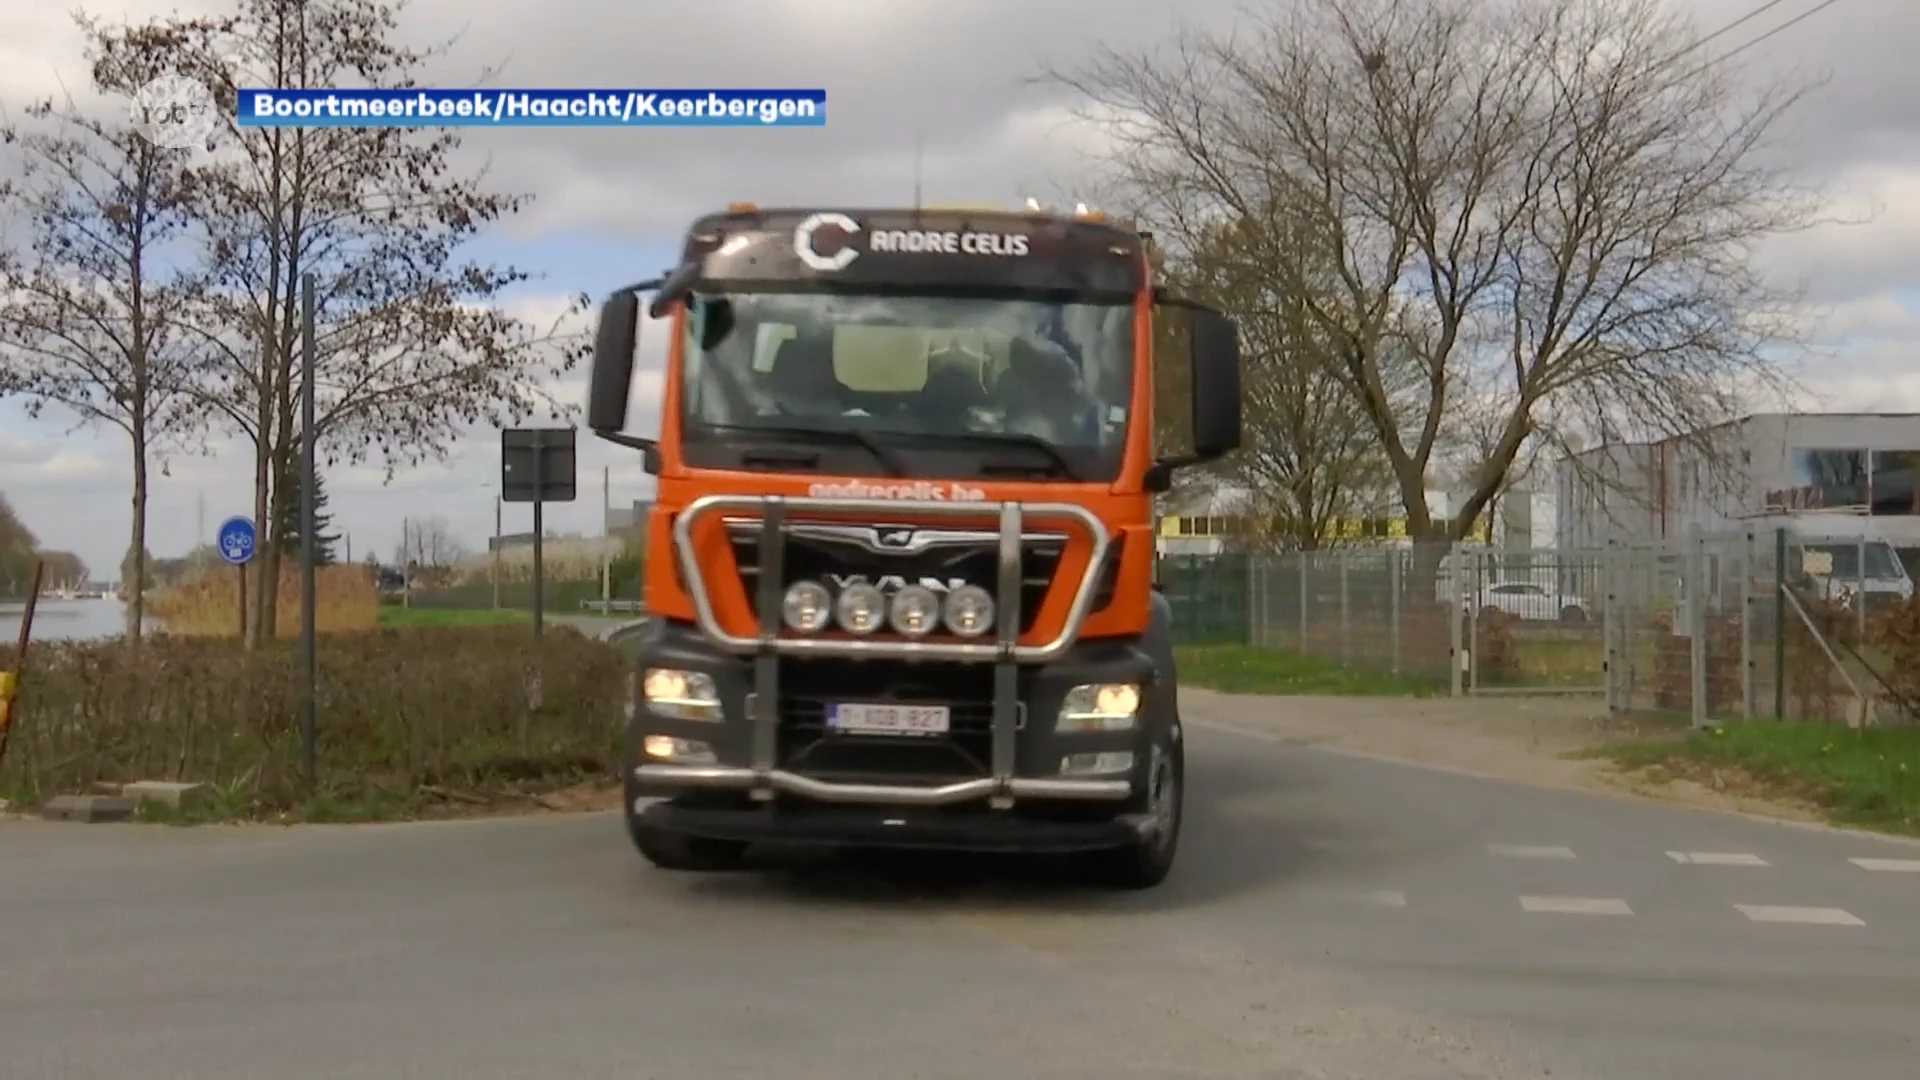 Politiezone Boortmeerbeek-Haacht-Keerbergen gaat deze maand extra controleren op zwaar vervoer